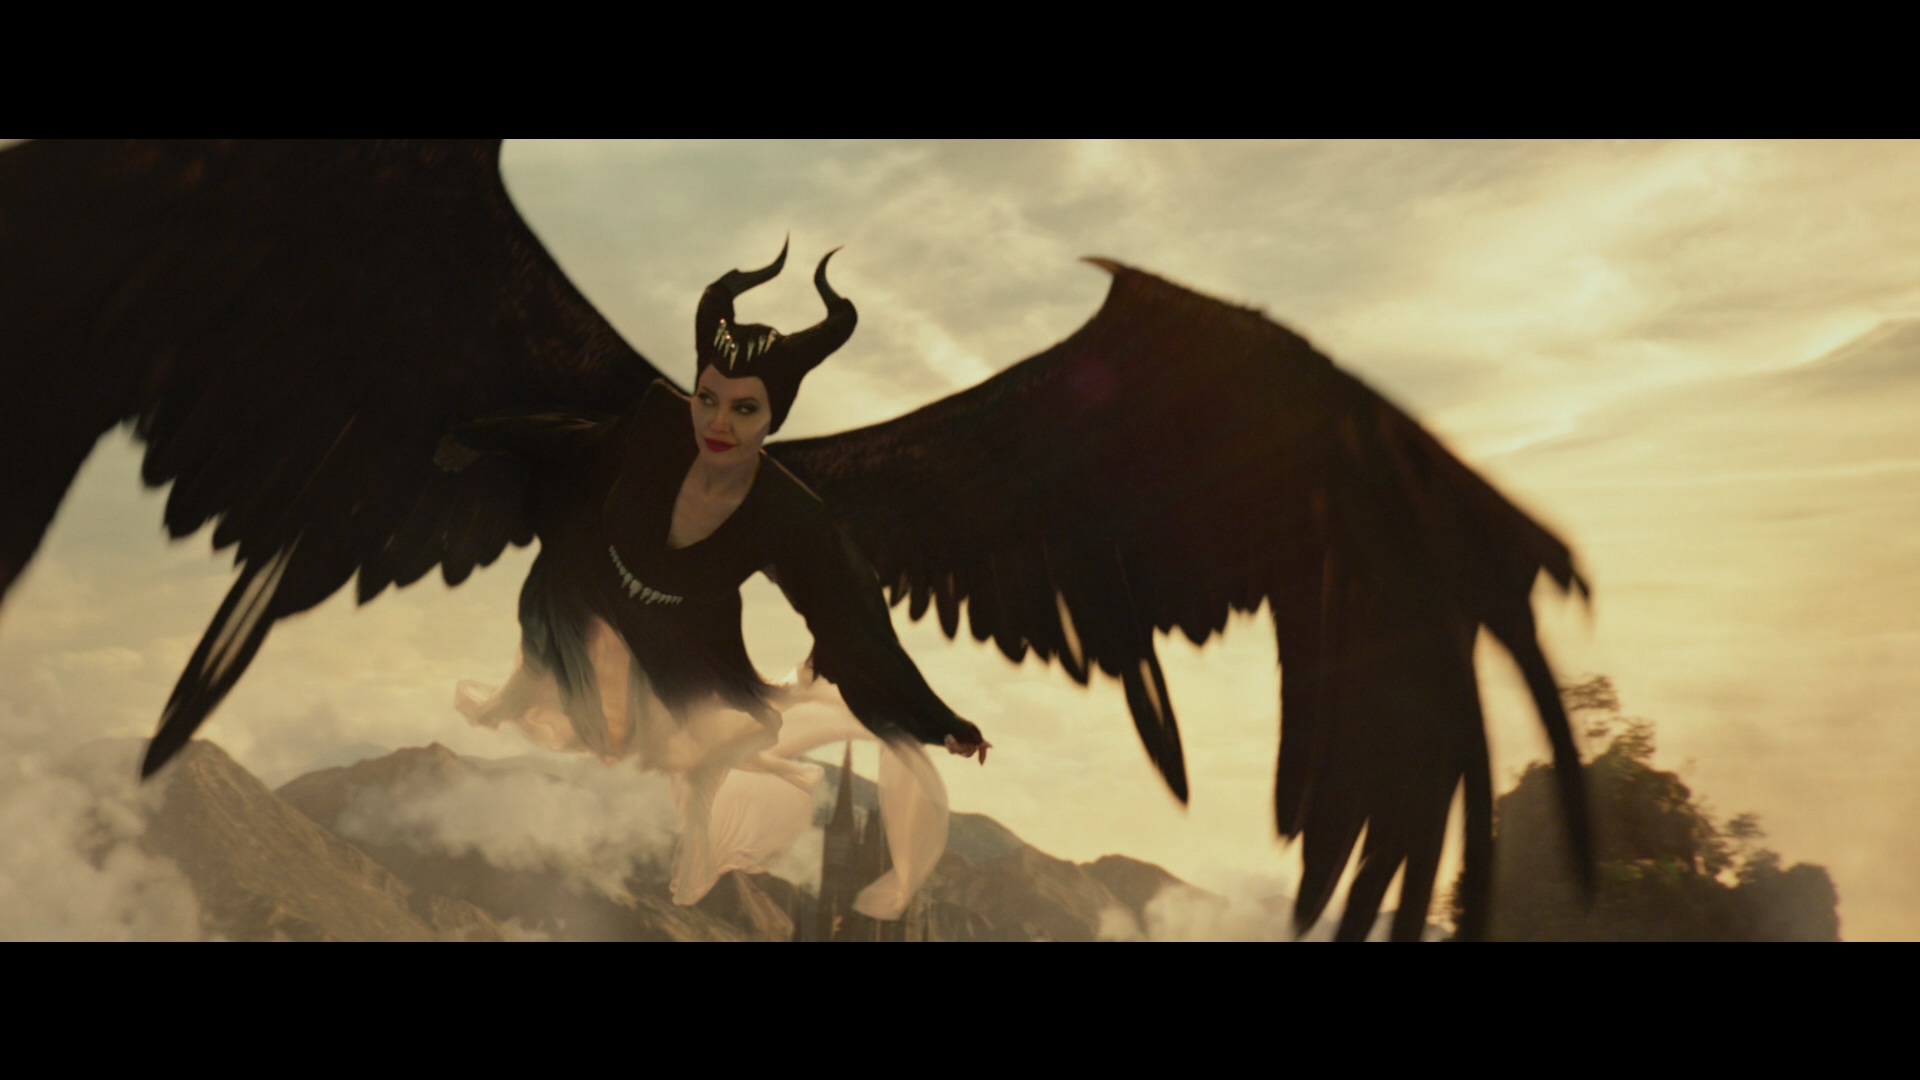 [ 沉睡魔咒2：恶魔夫人 3D/黑魔后2(港) ][DIY简繁/中英双语字幕 3D出屏感强] Maleficent Mistress of Evil 2019 3D Blu-ray 1080p AVC DTS-HD MA 7.1-Pete@HDSky    [45.21 GB]-5.jpg